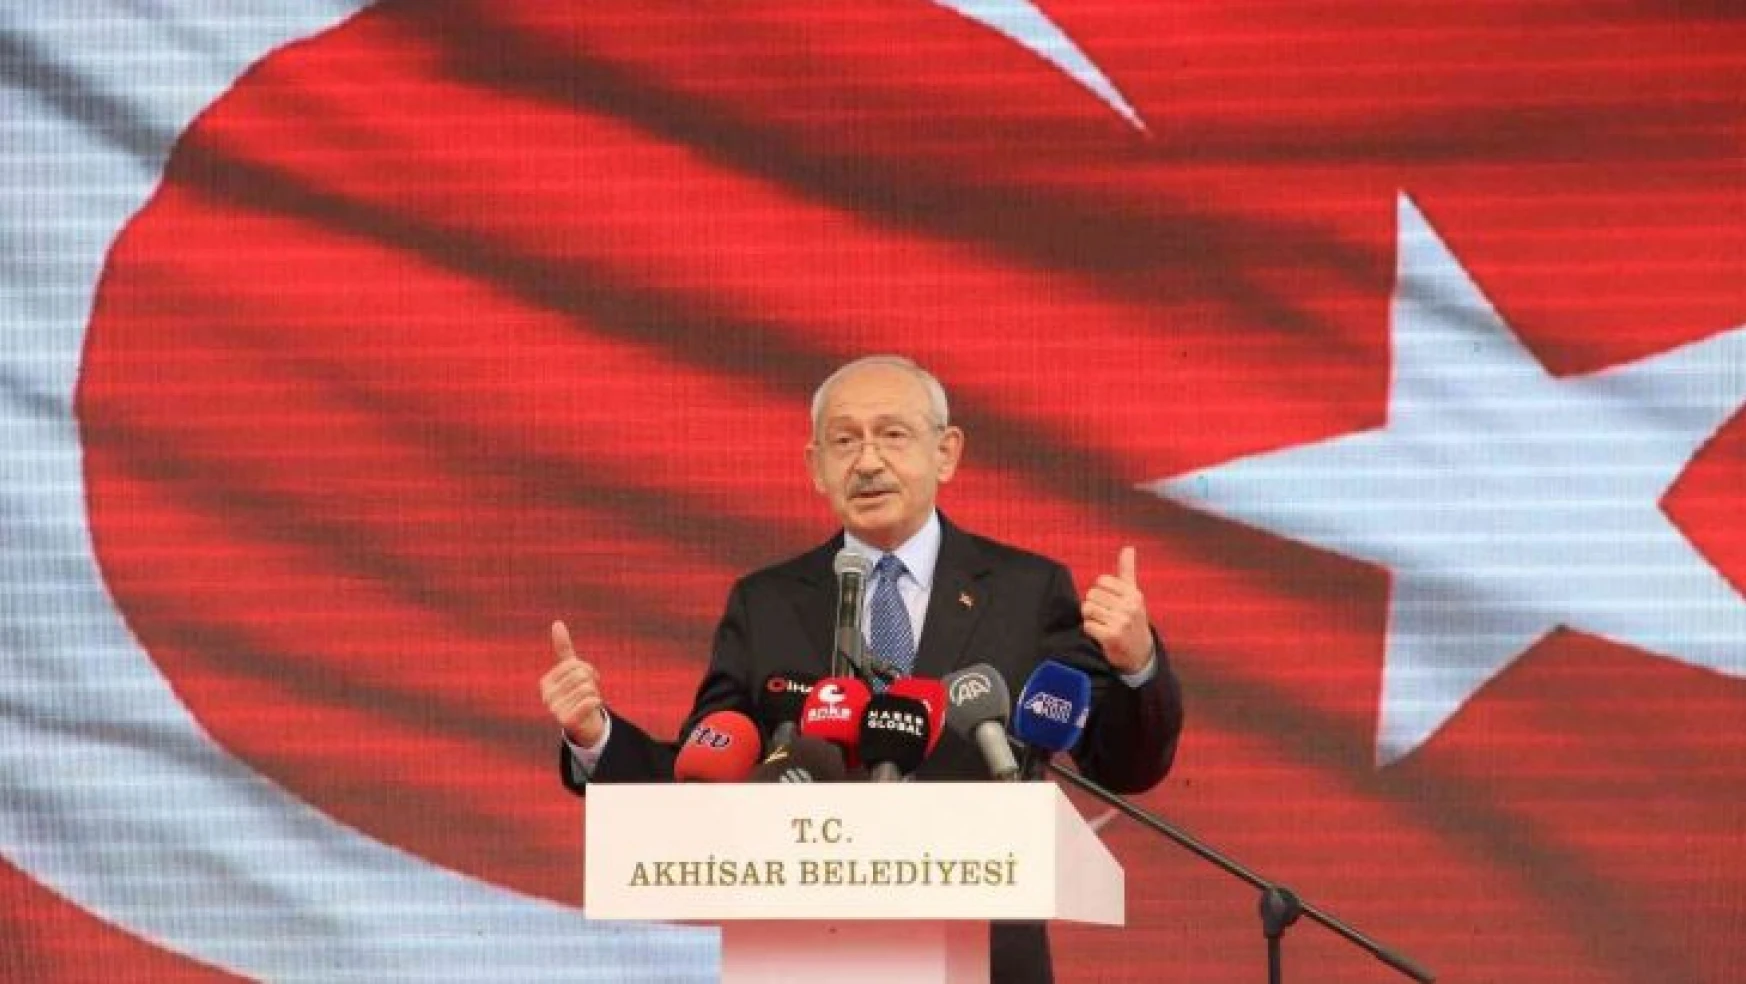 Kılıçdaroğlu: '5 yılda Türkiye'nin kaderini değiştireceğiz'